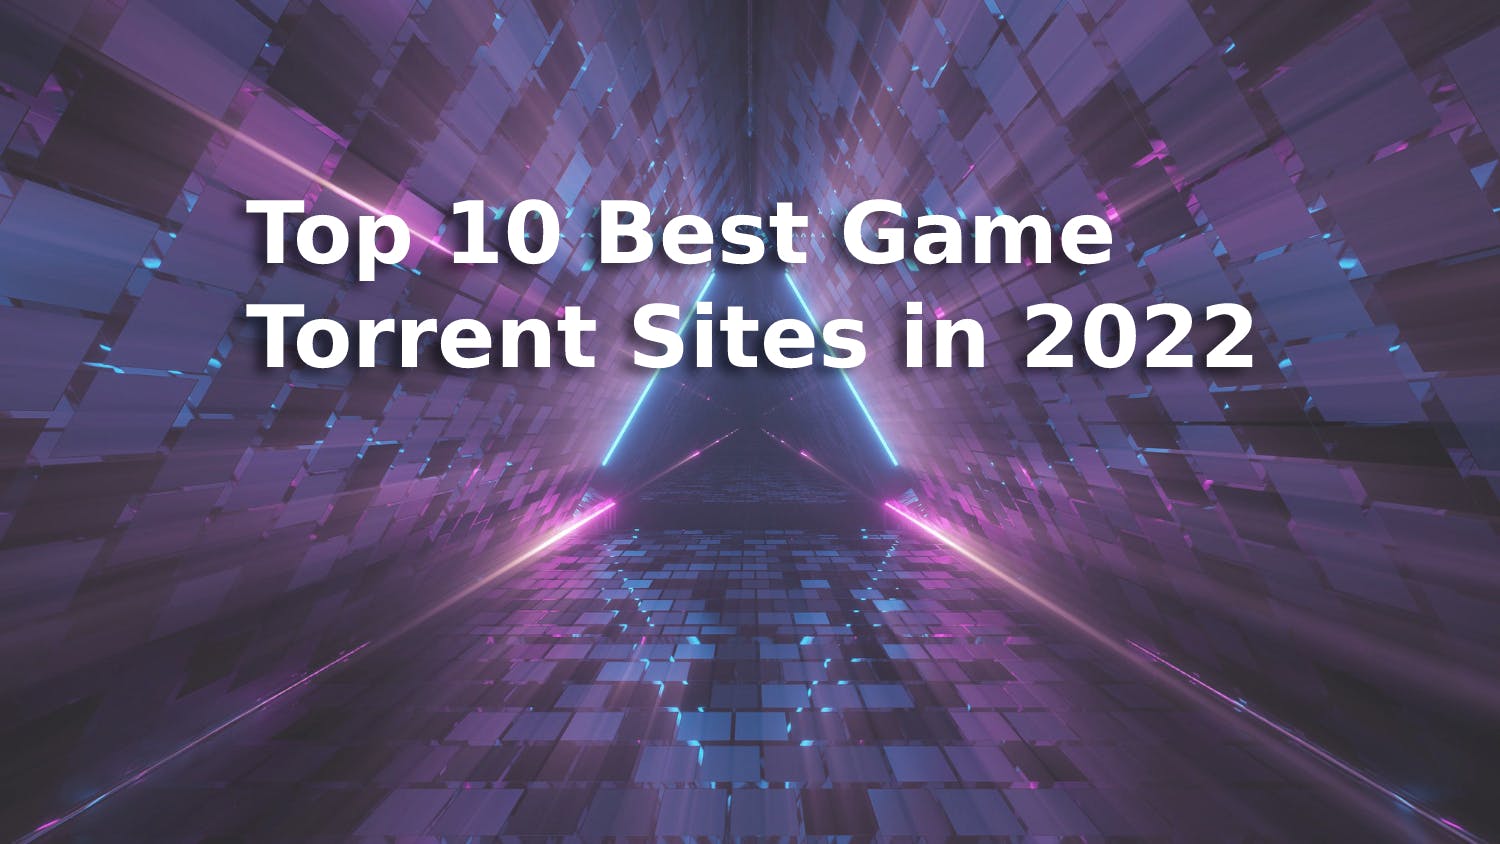 Top 10 Best Game Torrent Sites in 2022